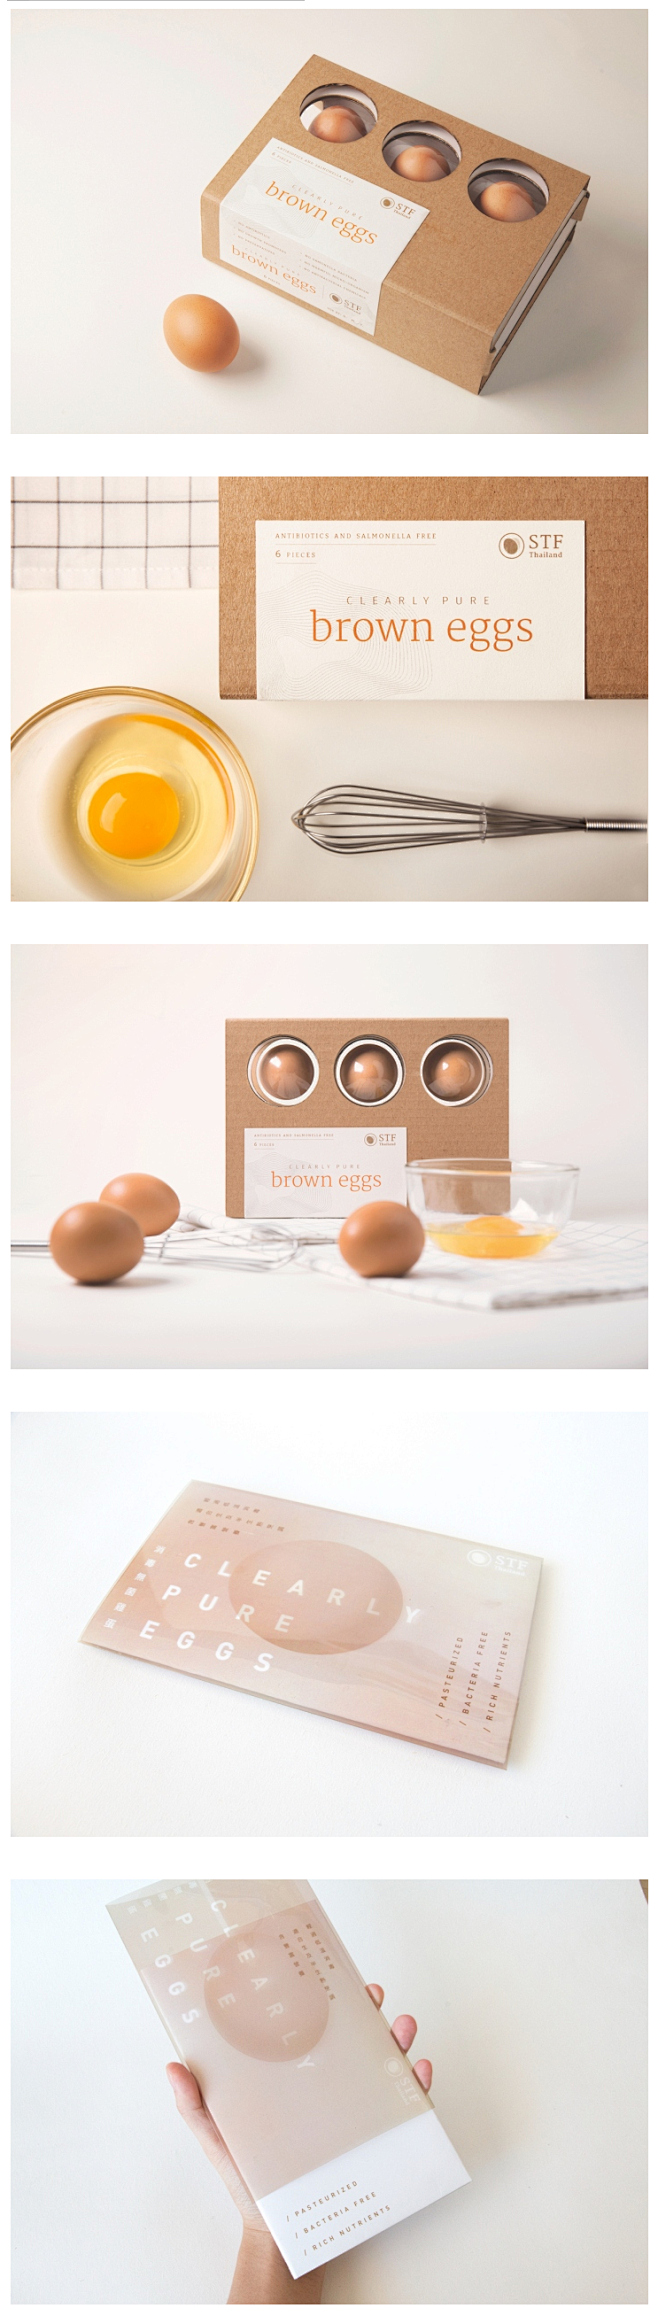 精致极简风格的鸡蛋包装